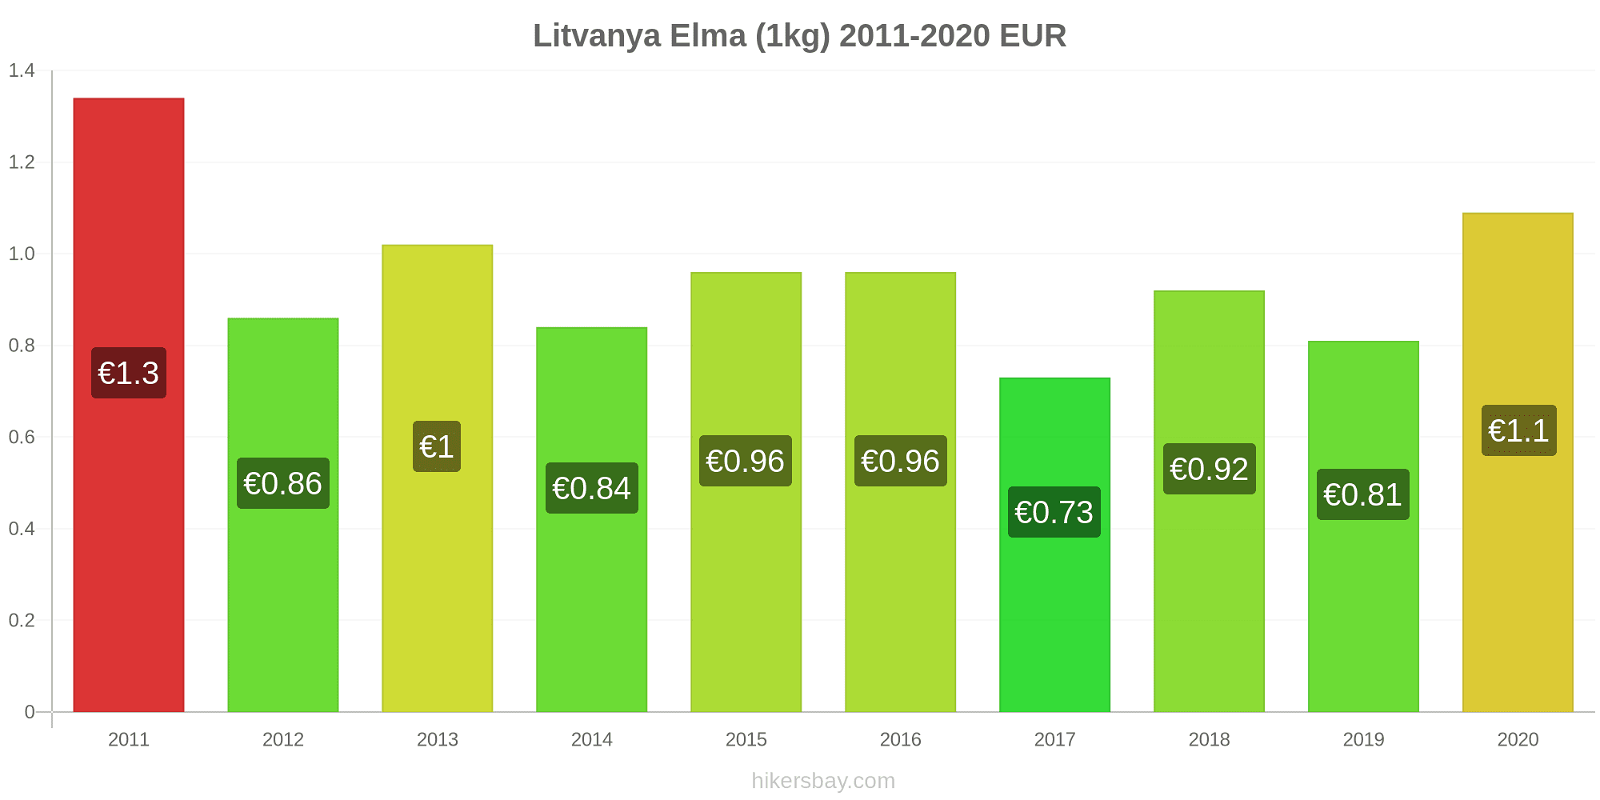 Litvanya fiyat değişiklikleri Elma (1kg) hikersbay.com